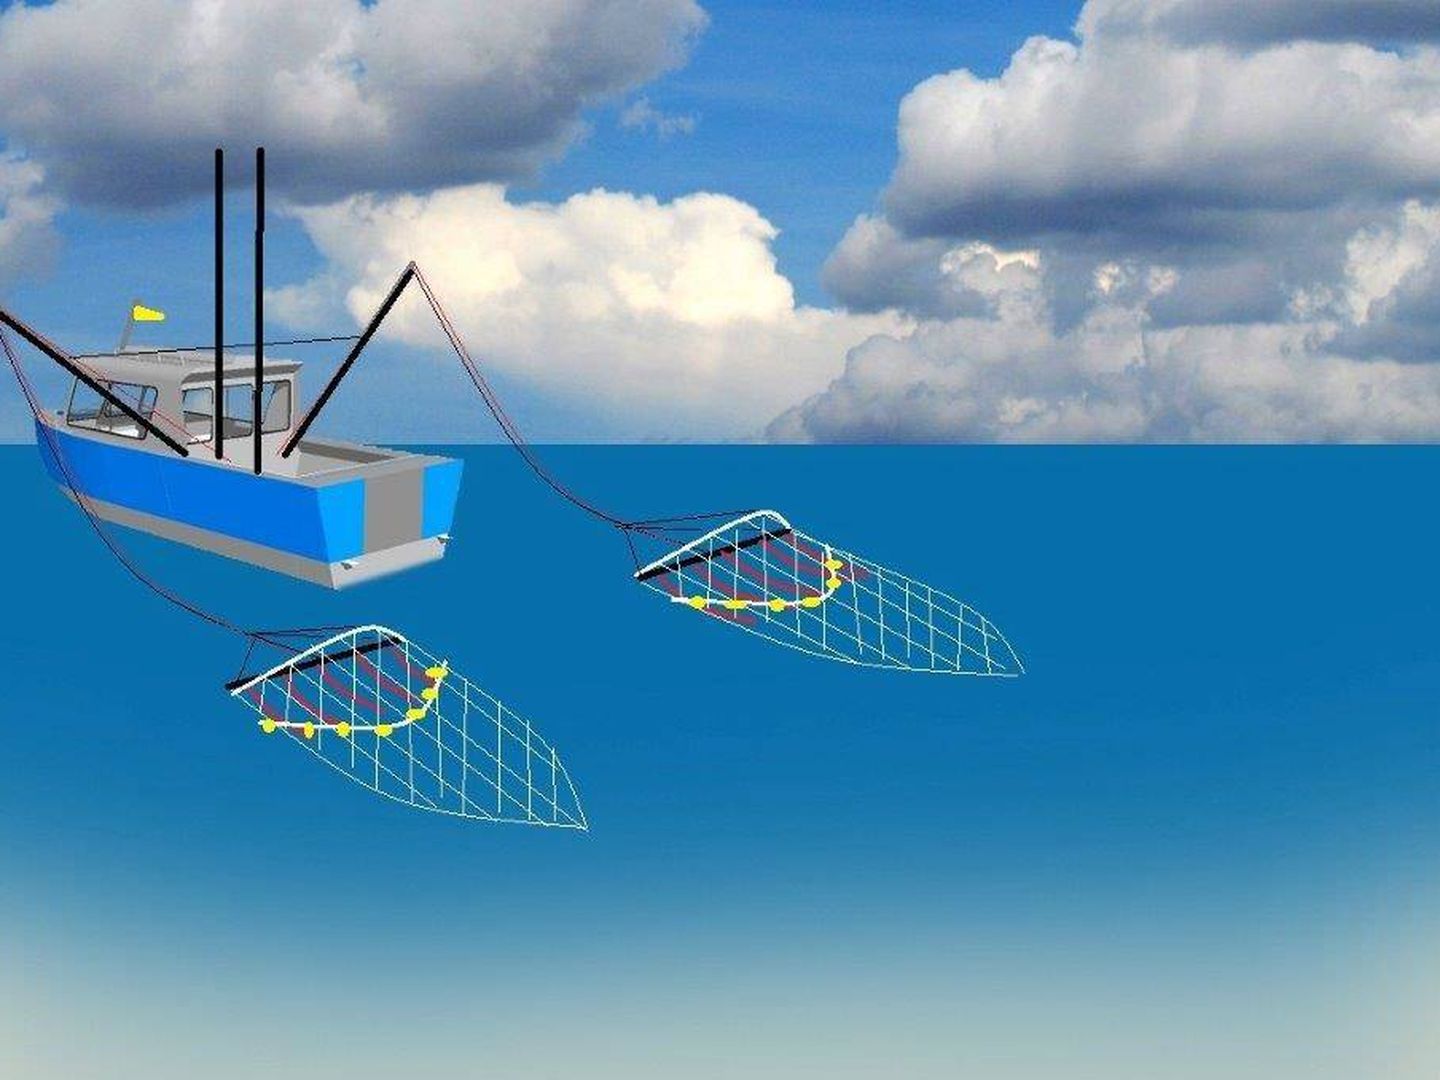 Ilustración de un barco equipado con pulsos eléctricos en las redes.